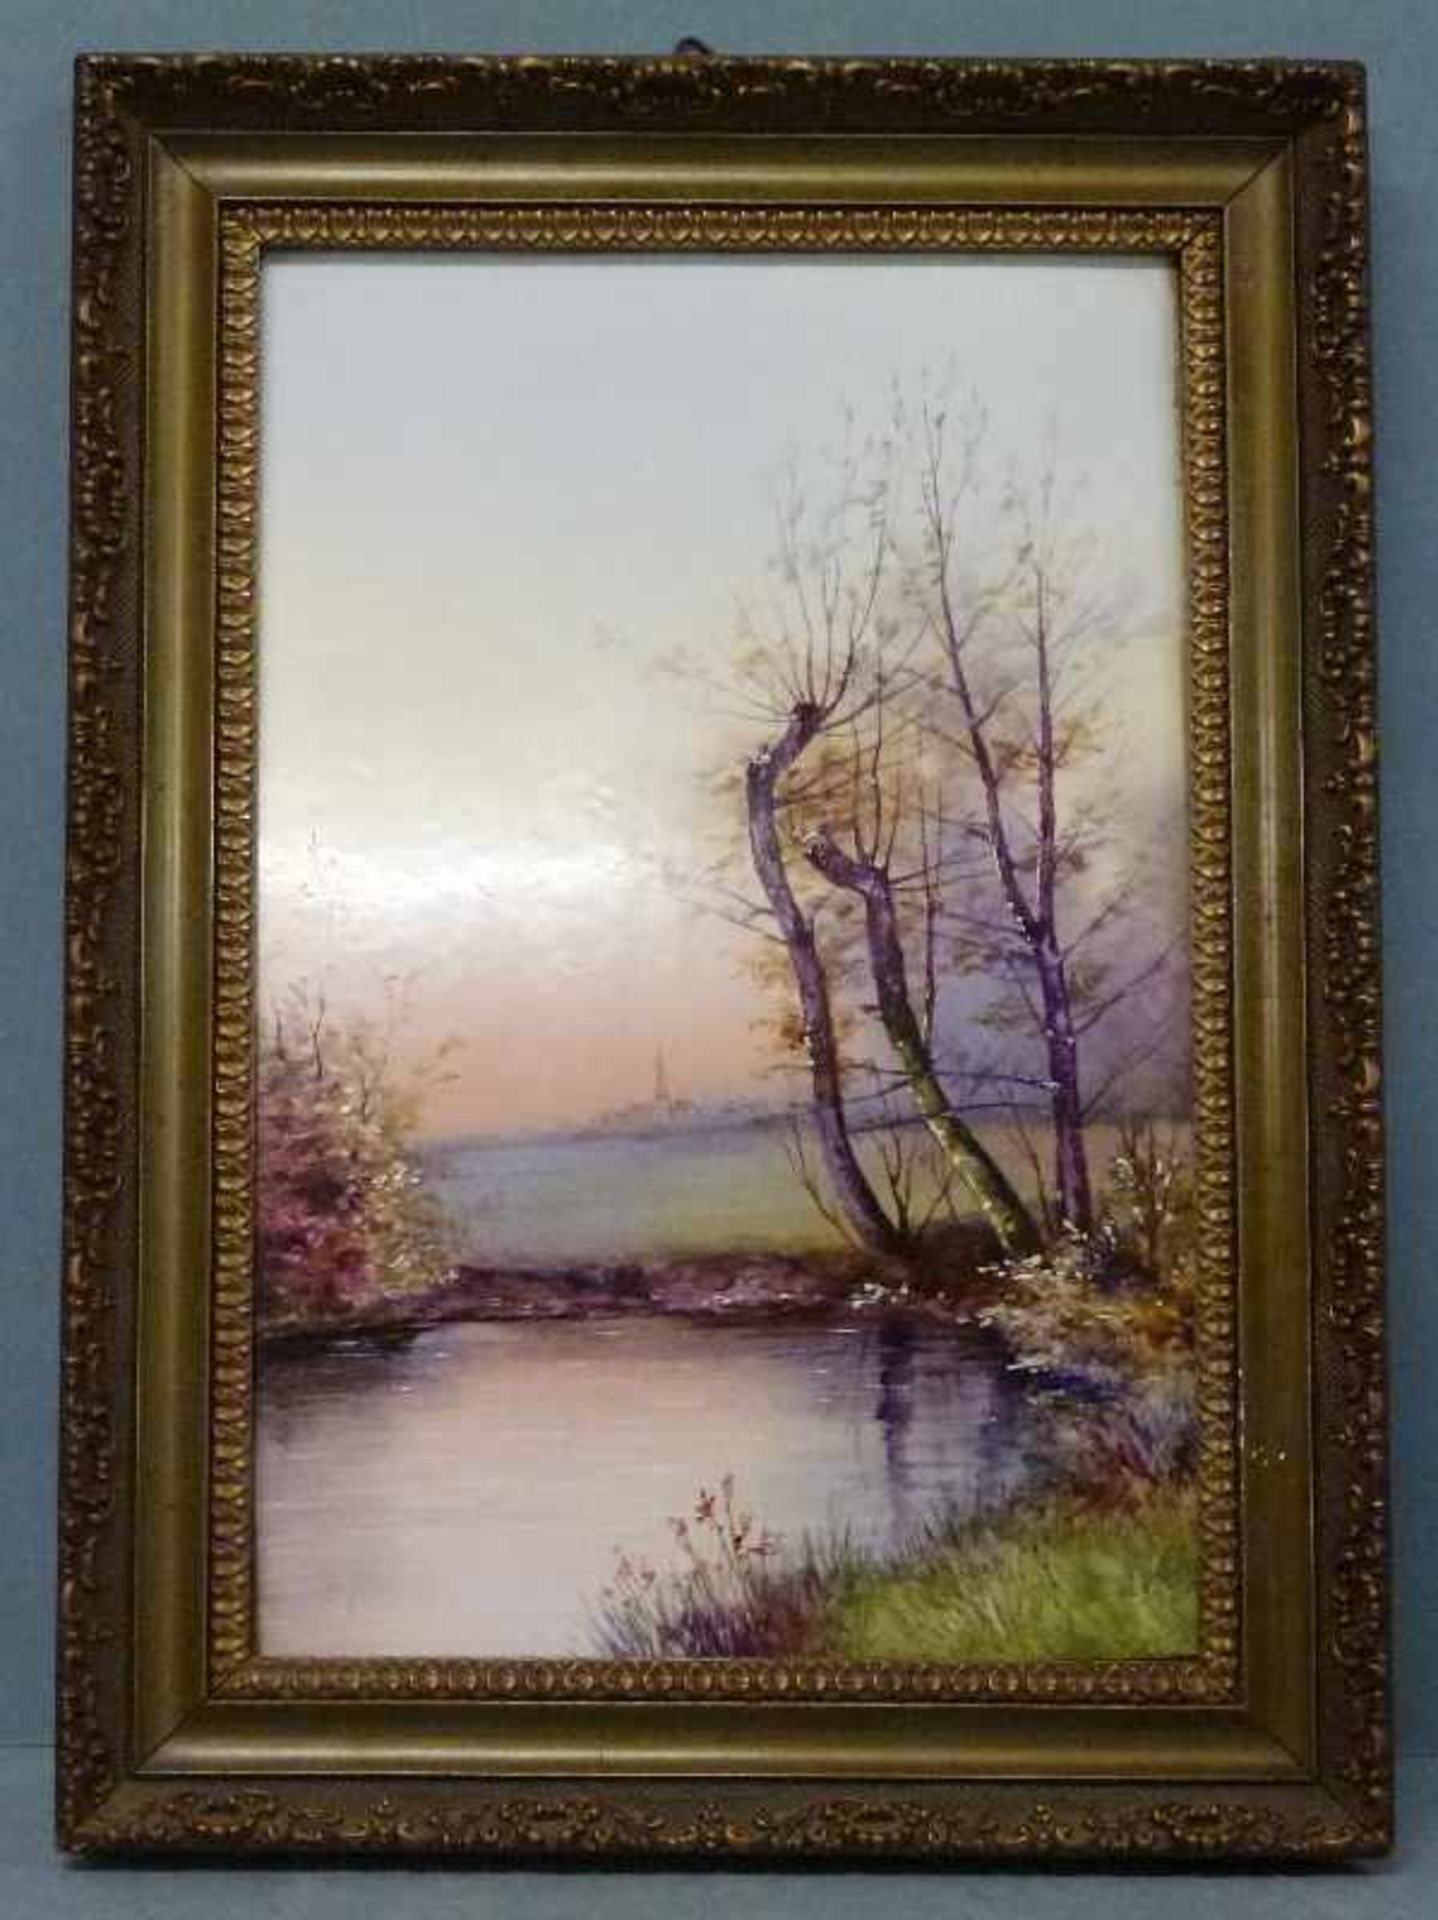 Fayenceplatte, um 1900 hochrechteckig, Landschaftsmalerei, GR, 30x20 cm - Bild 2 aus 2